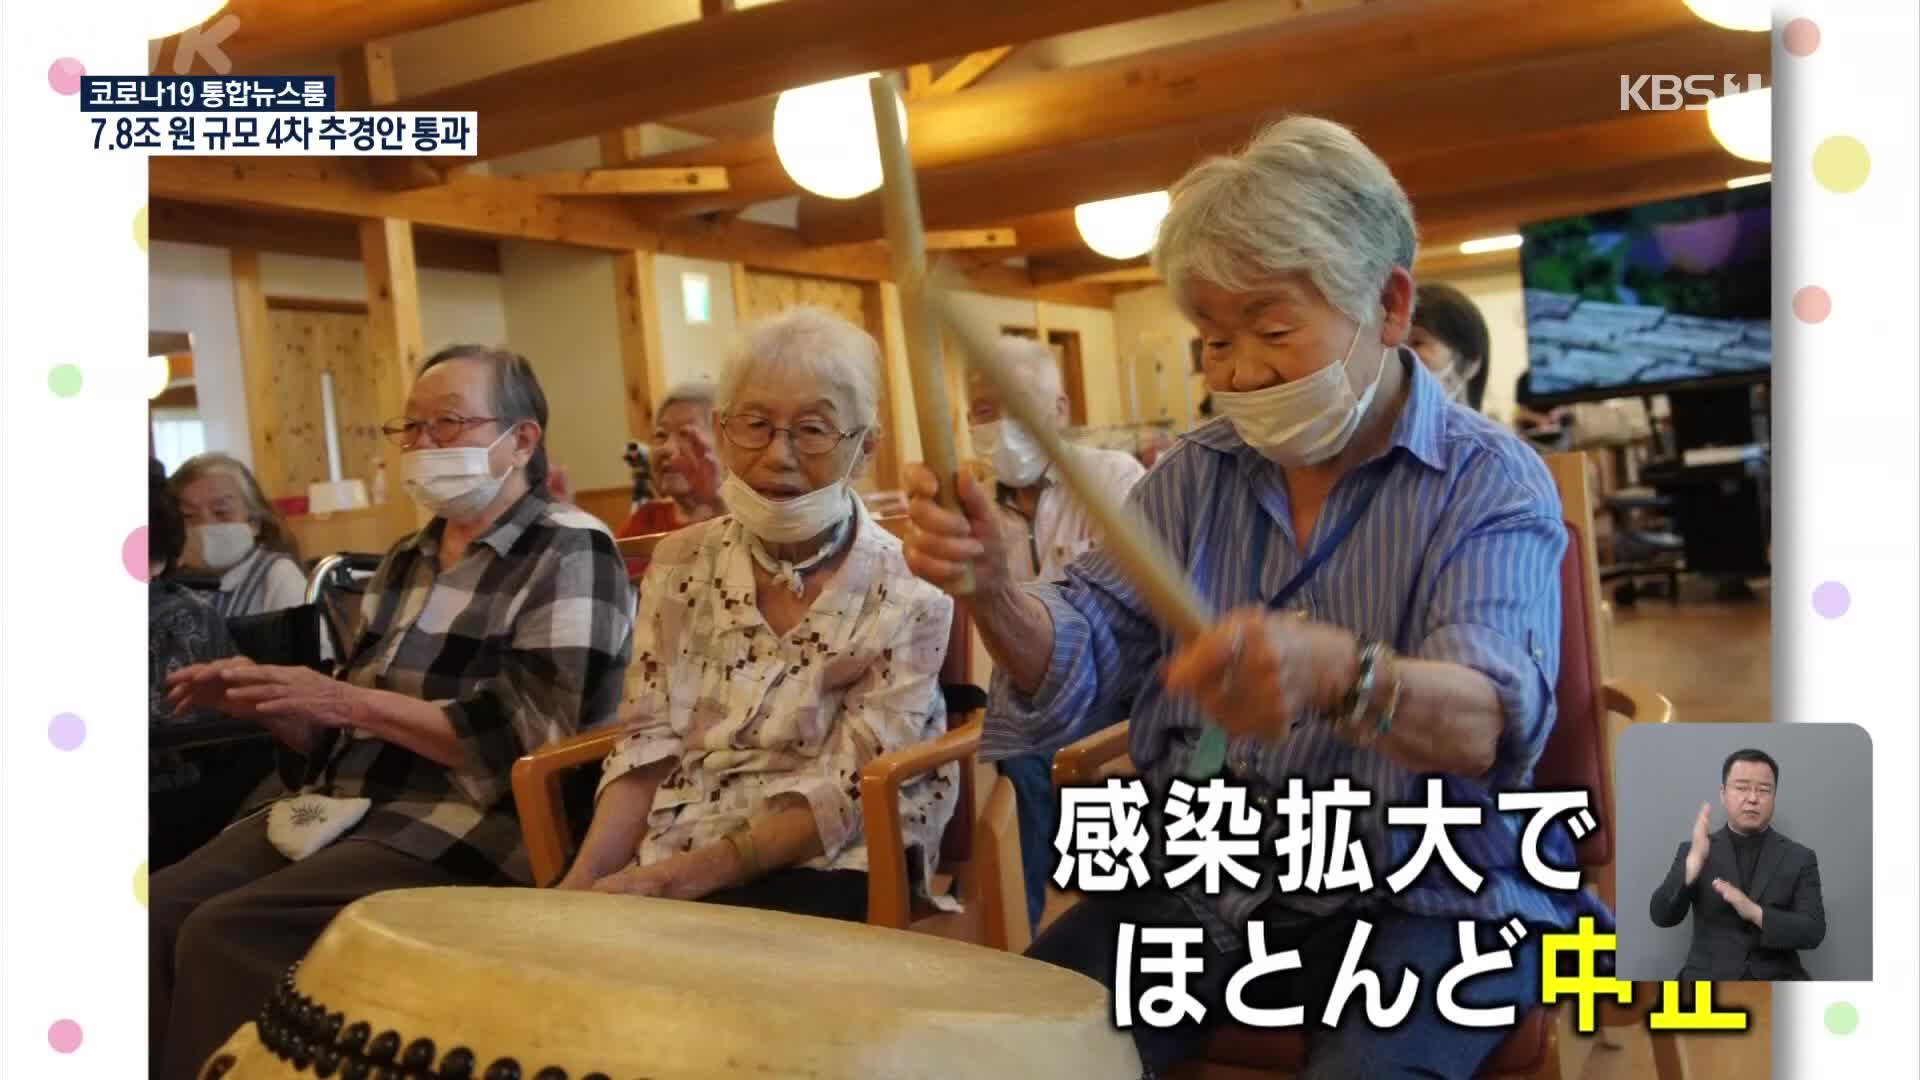 일본, 노인들도 즐길 수 있는 온라인 여행